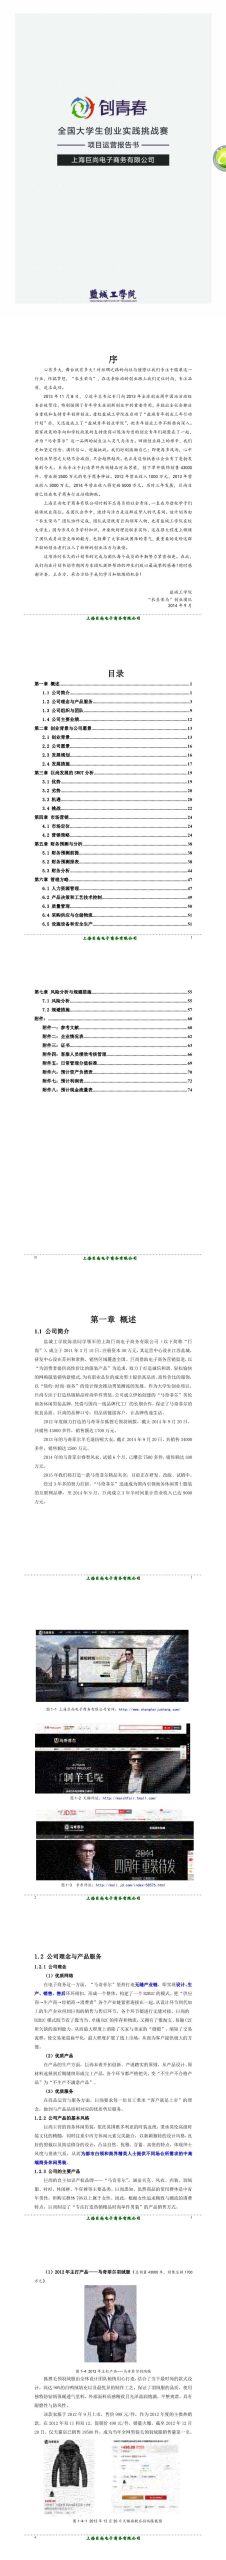 上海巨尚电子商务有限公司项目运营报告